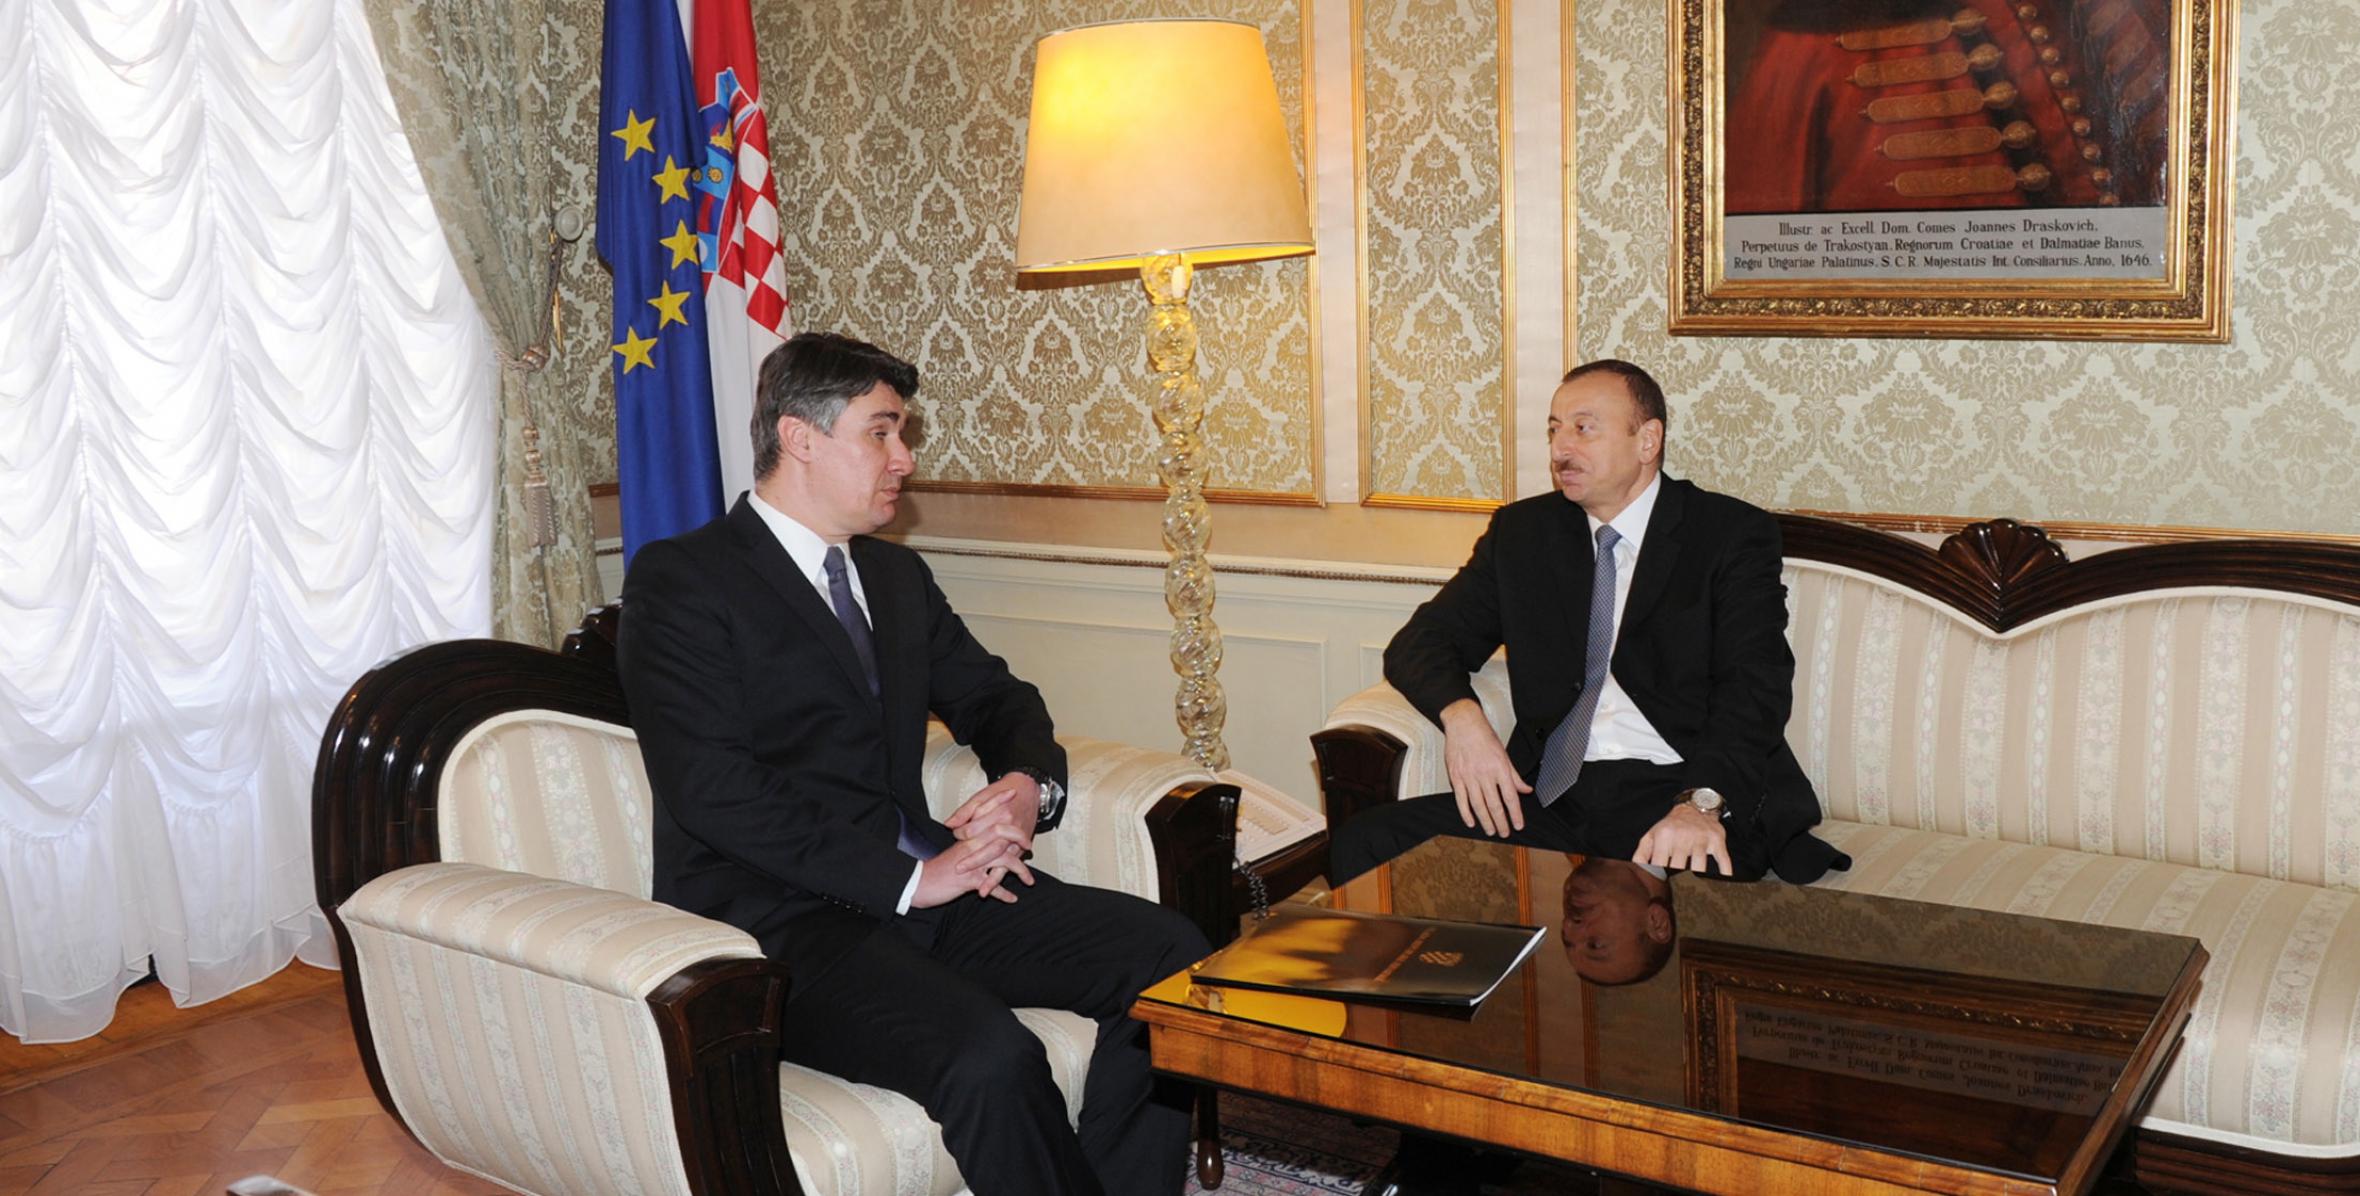 Ilham Aliyev met with Prime Minister of Croatia Zoran Milanović